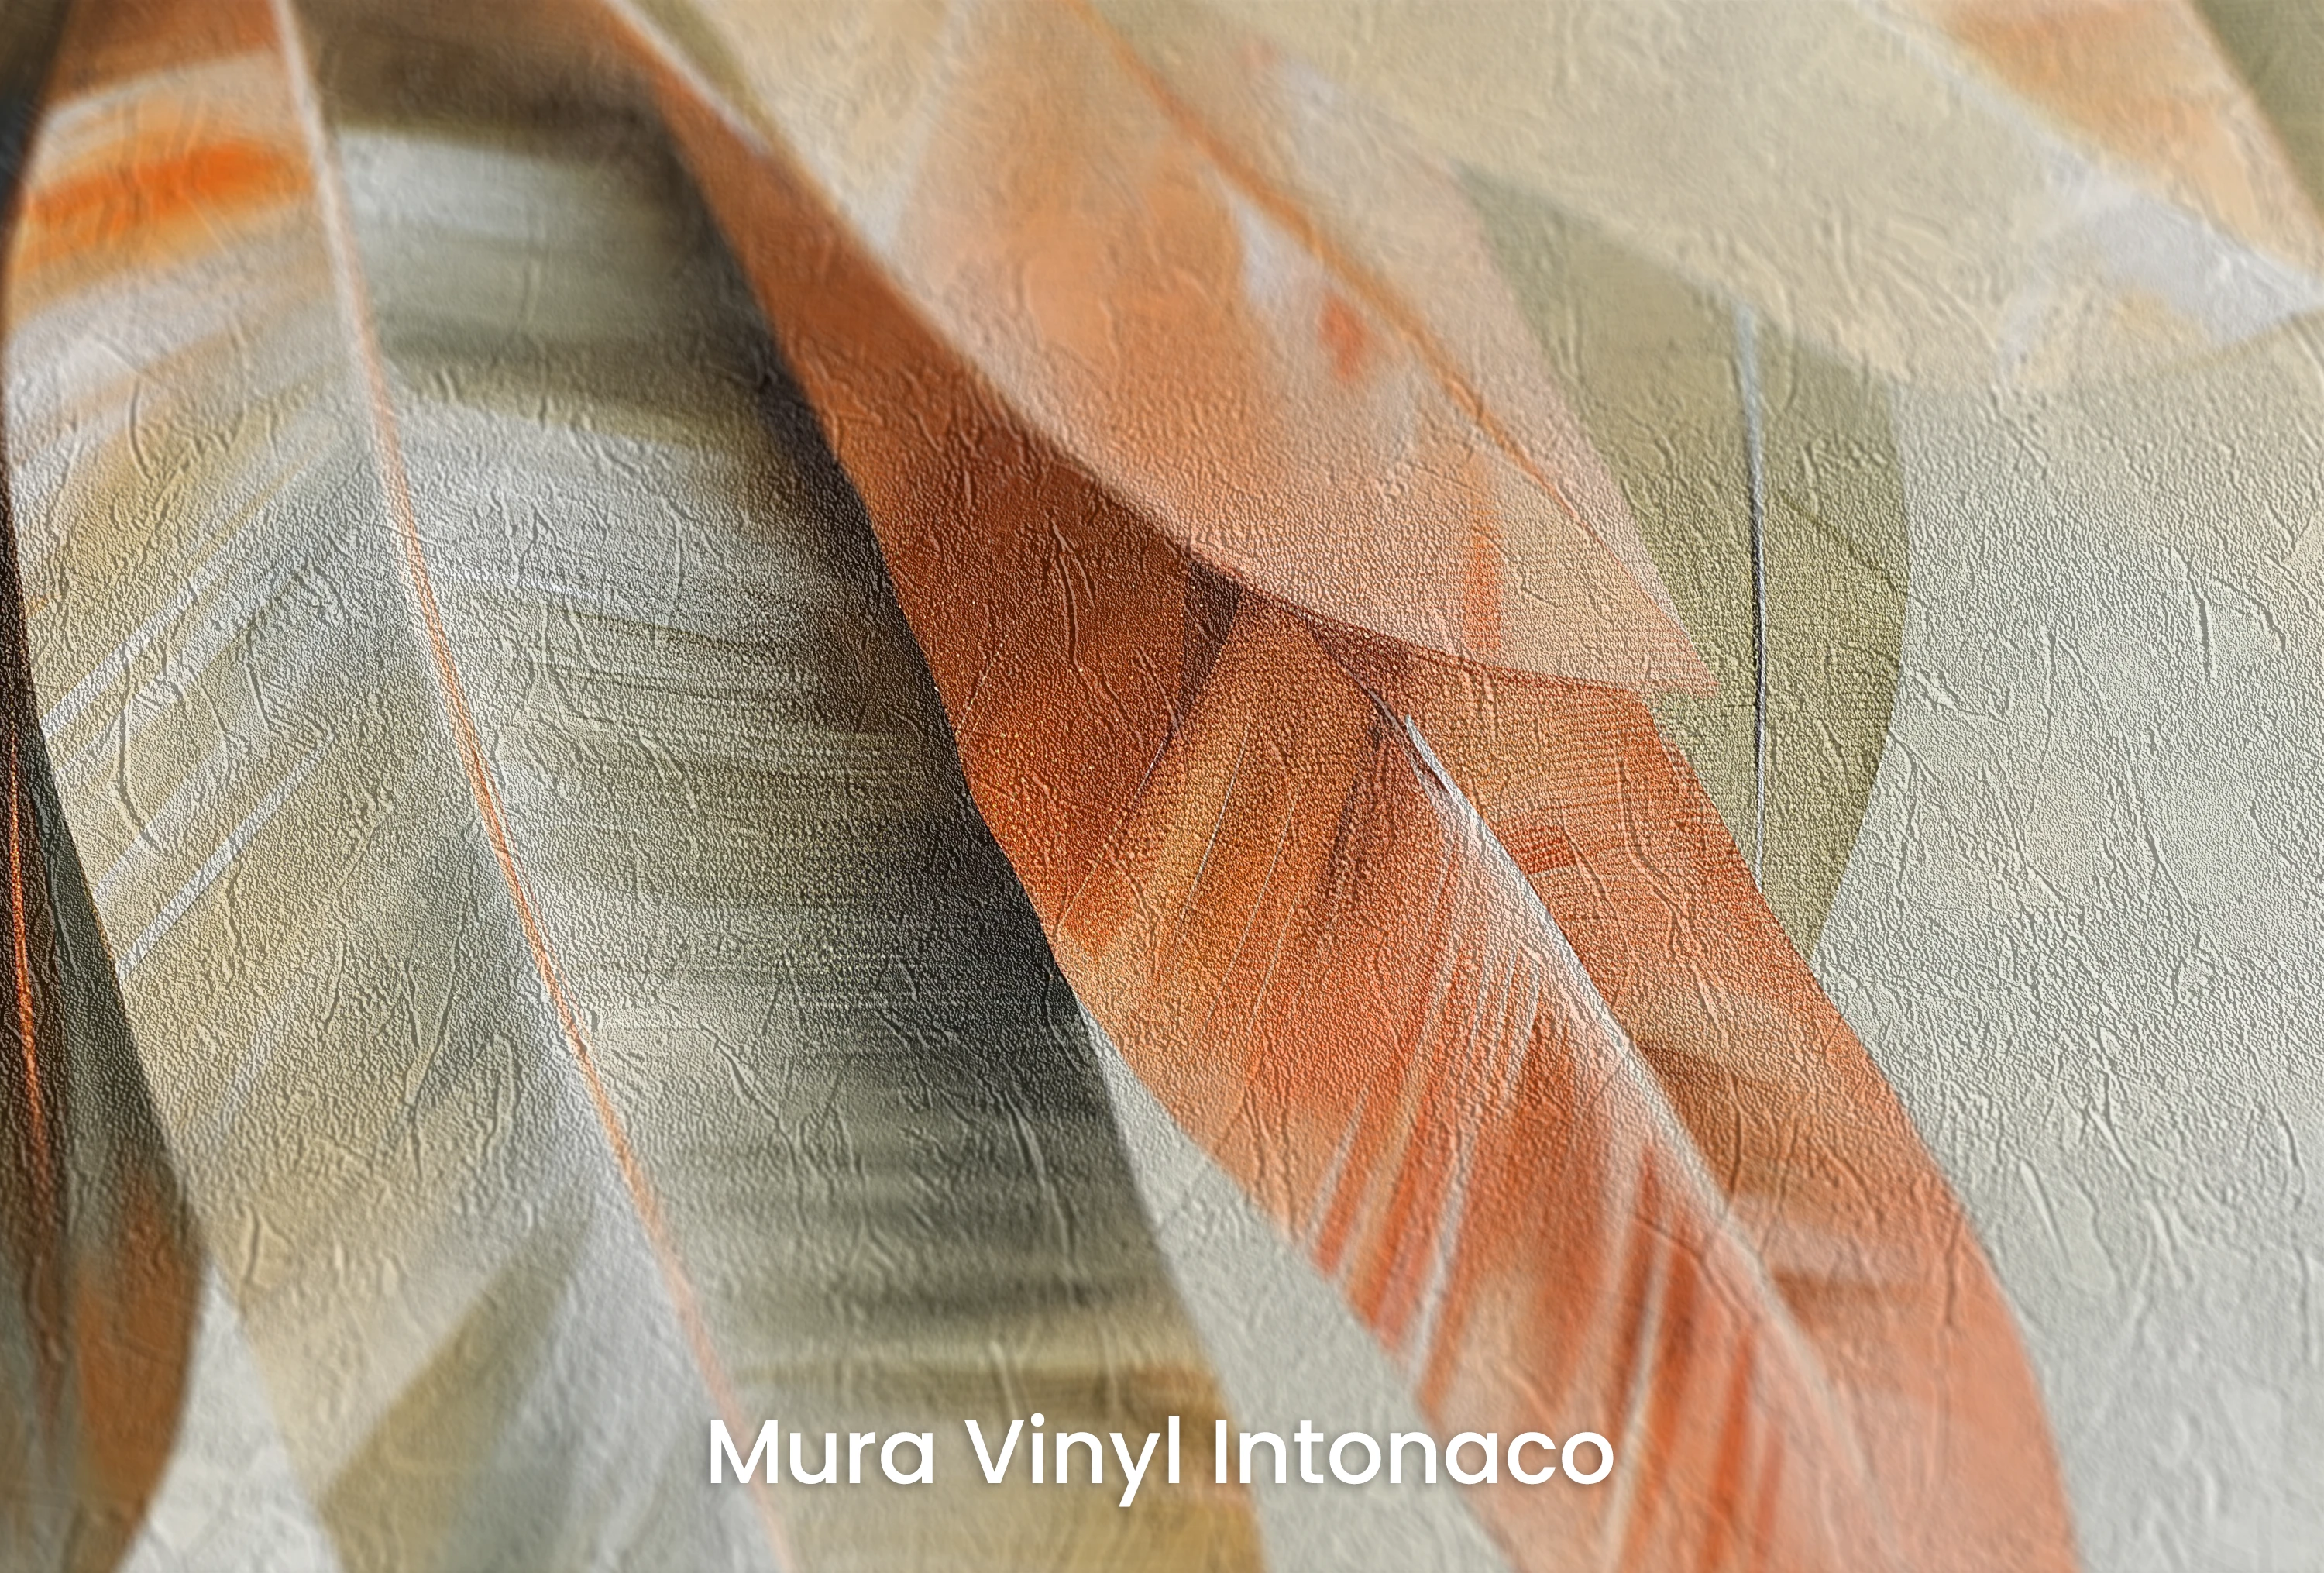 Vergrößerung des Musters „Copper Elegance“, gedruckt auf einem Untergrund mit der Struktur aus geriebenem Putz „Mura Vinyl Intonaco“